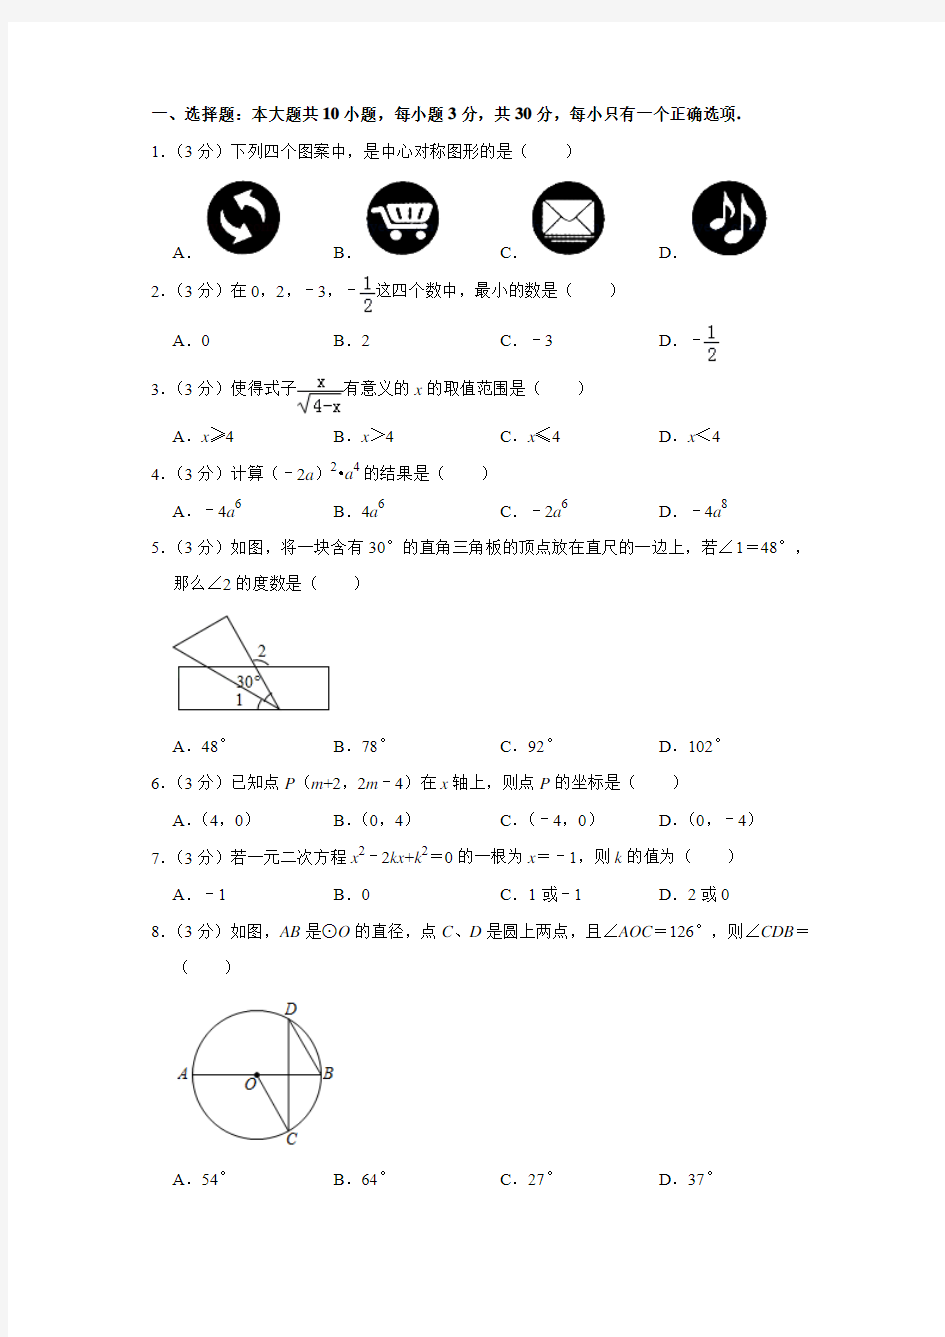 甘肃省2019年普通高中招生考试数学试卷真题解析